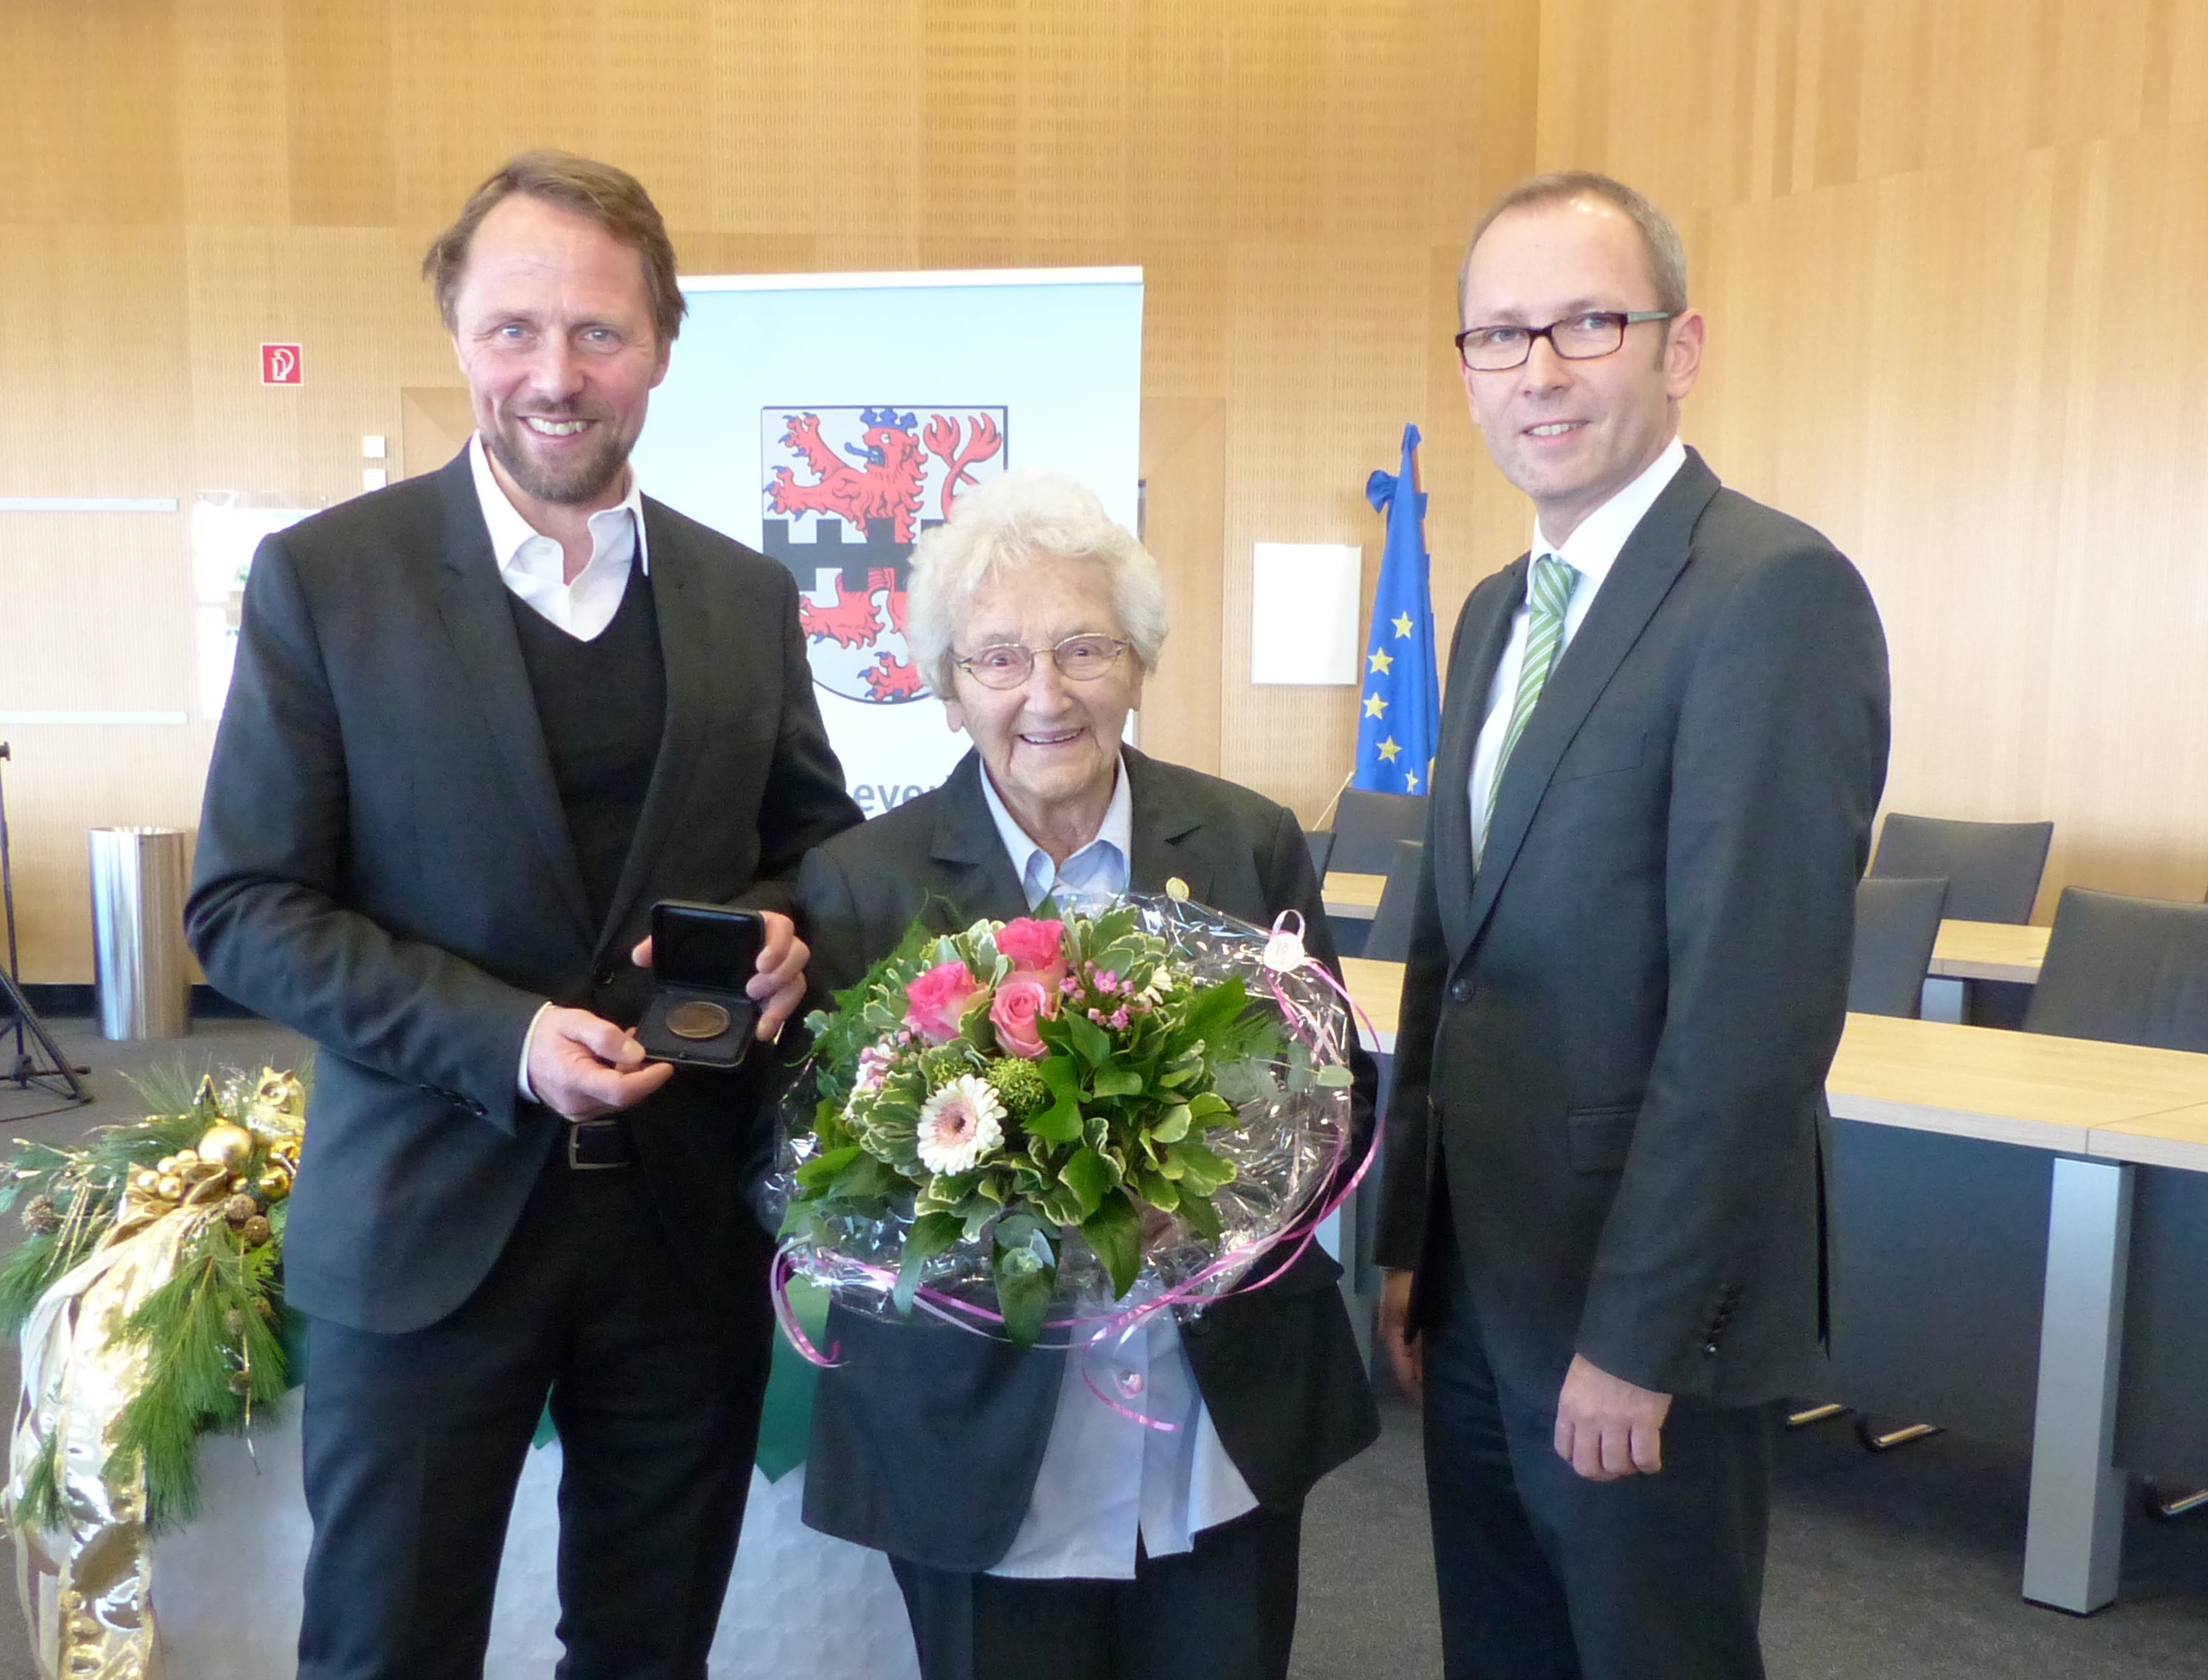 Verleihung des Leverkusen Talers: Ehrenamtlich Aktive mit Feierstunde gewürdigt